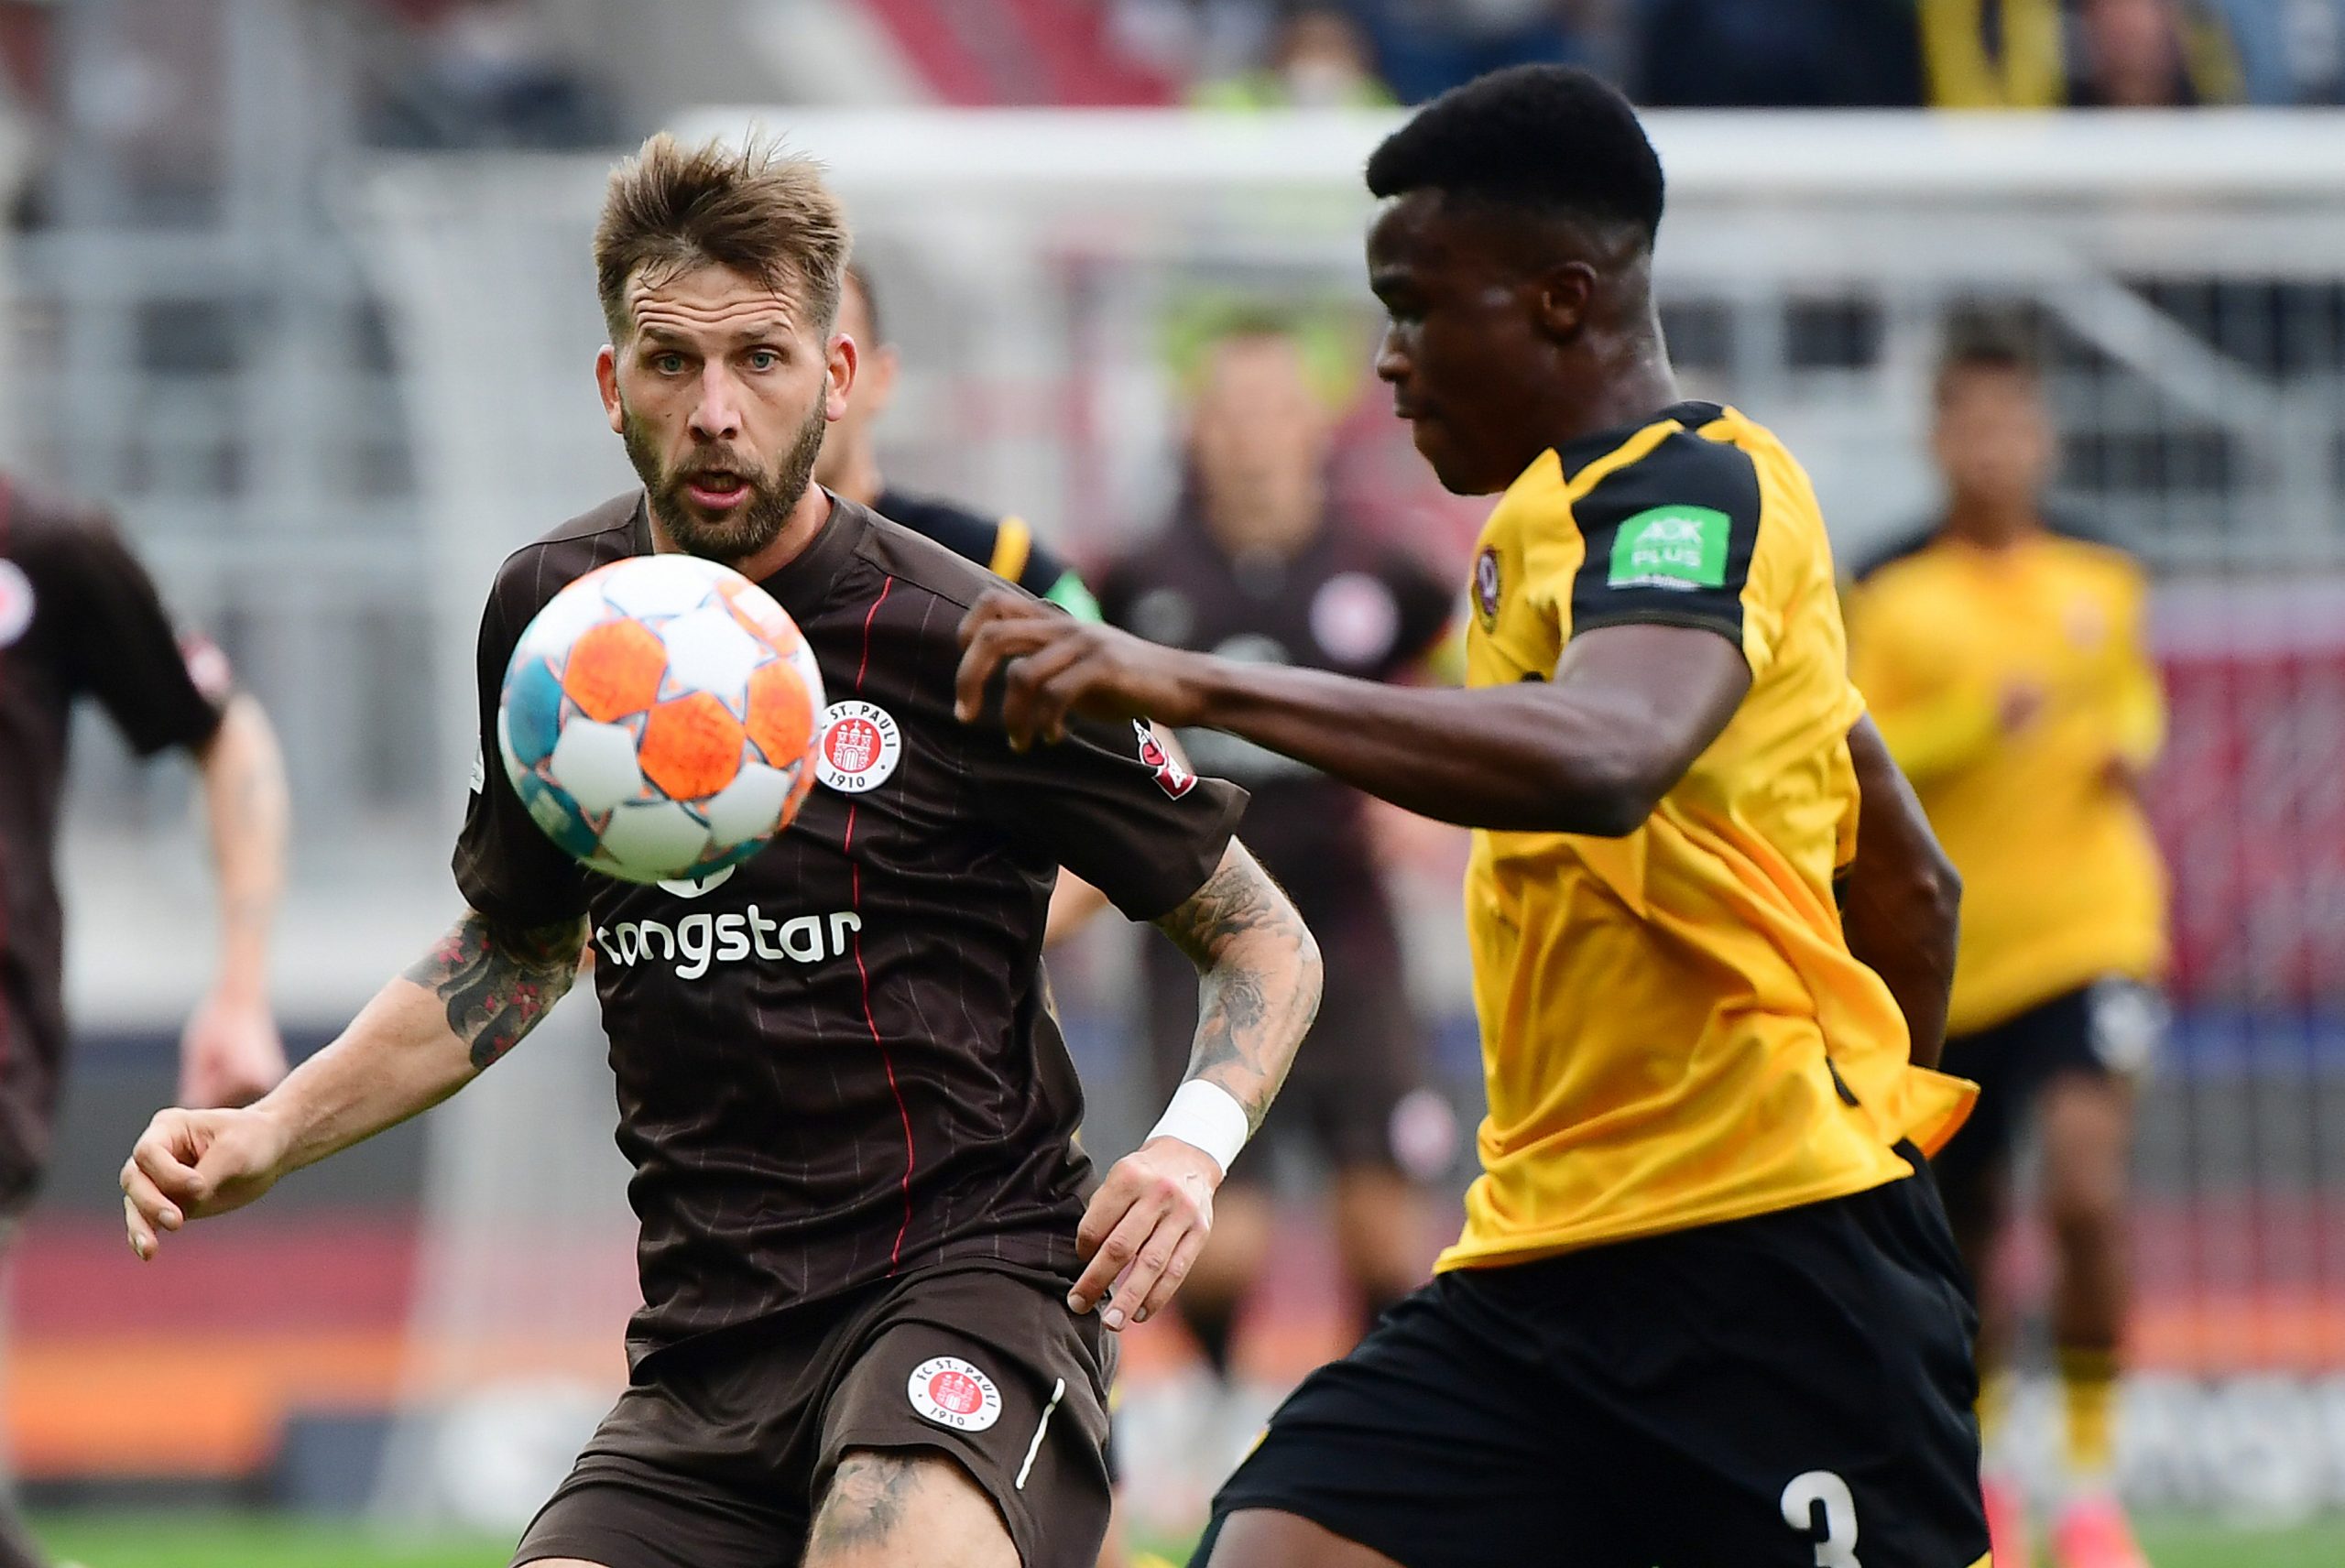 St. Pauli-Stürmer Guido Burgstaller (l.) beim Punktspiel gegen Dresdens Michael Akoto